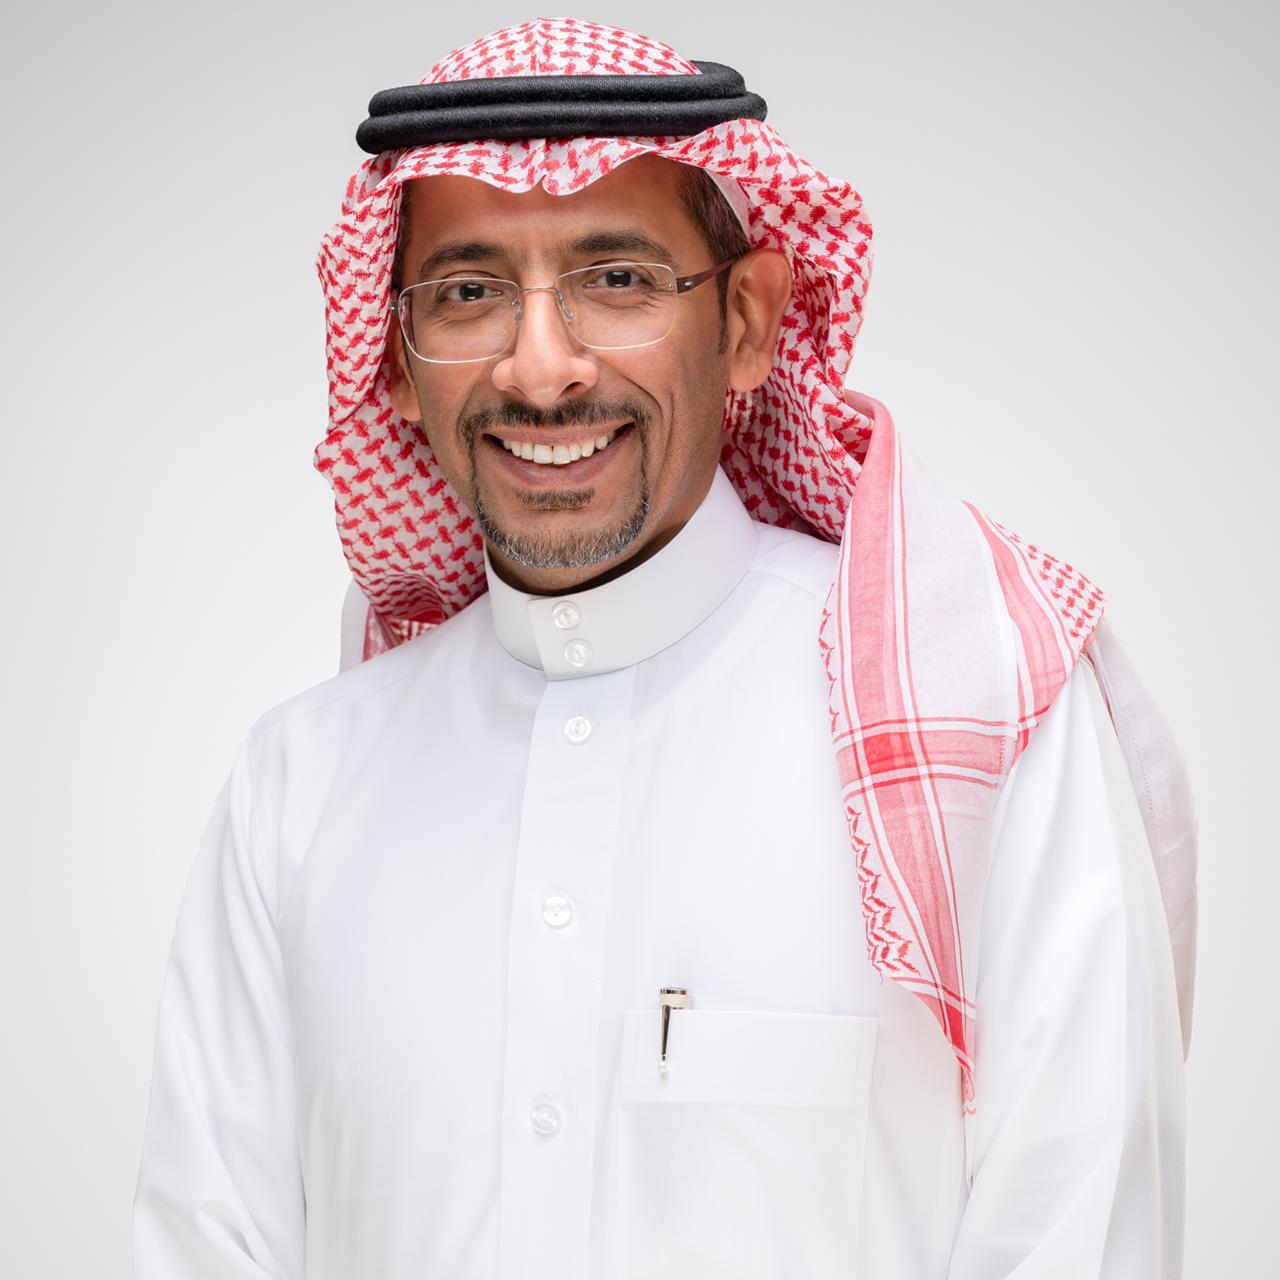 HE Mr. Bandar Ibrahim Al-Khorayef